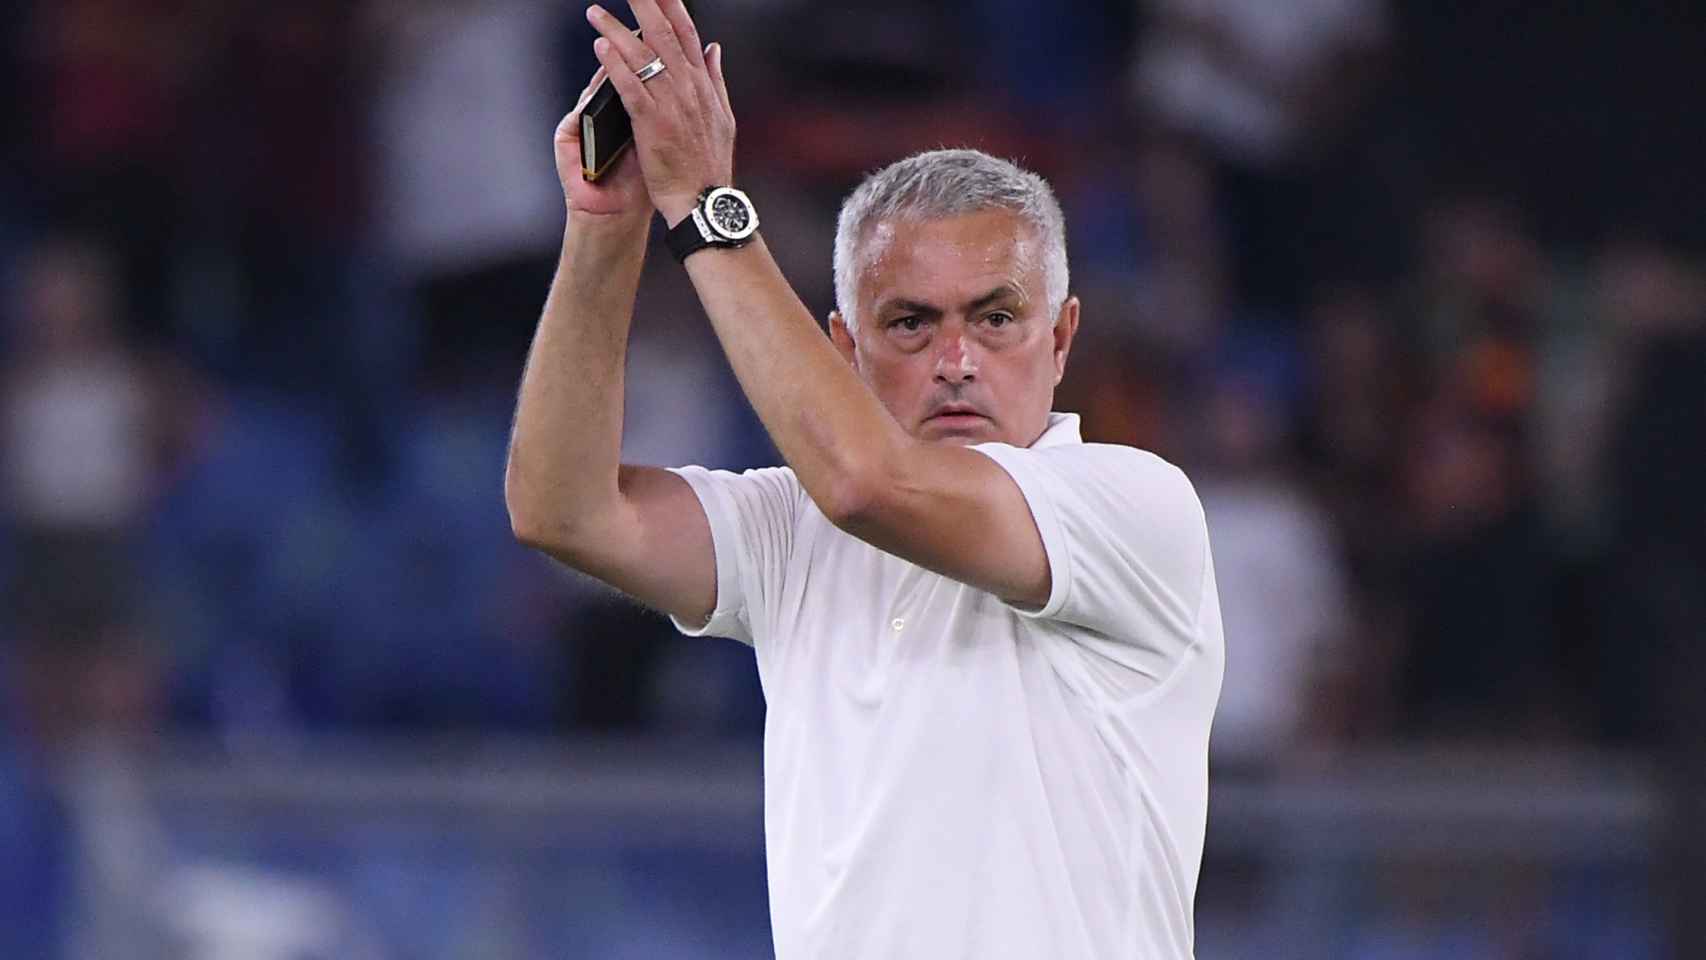 José Mourinho, en un partido de la Roma en la temporada 2021/2022